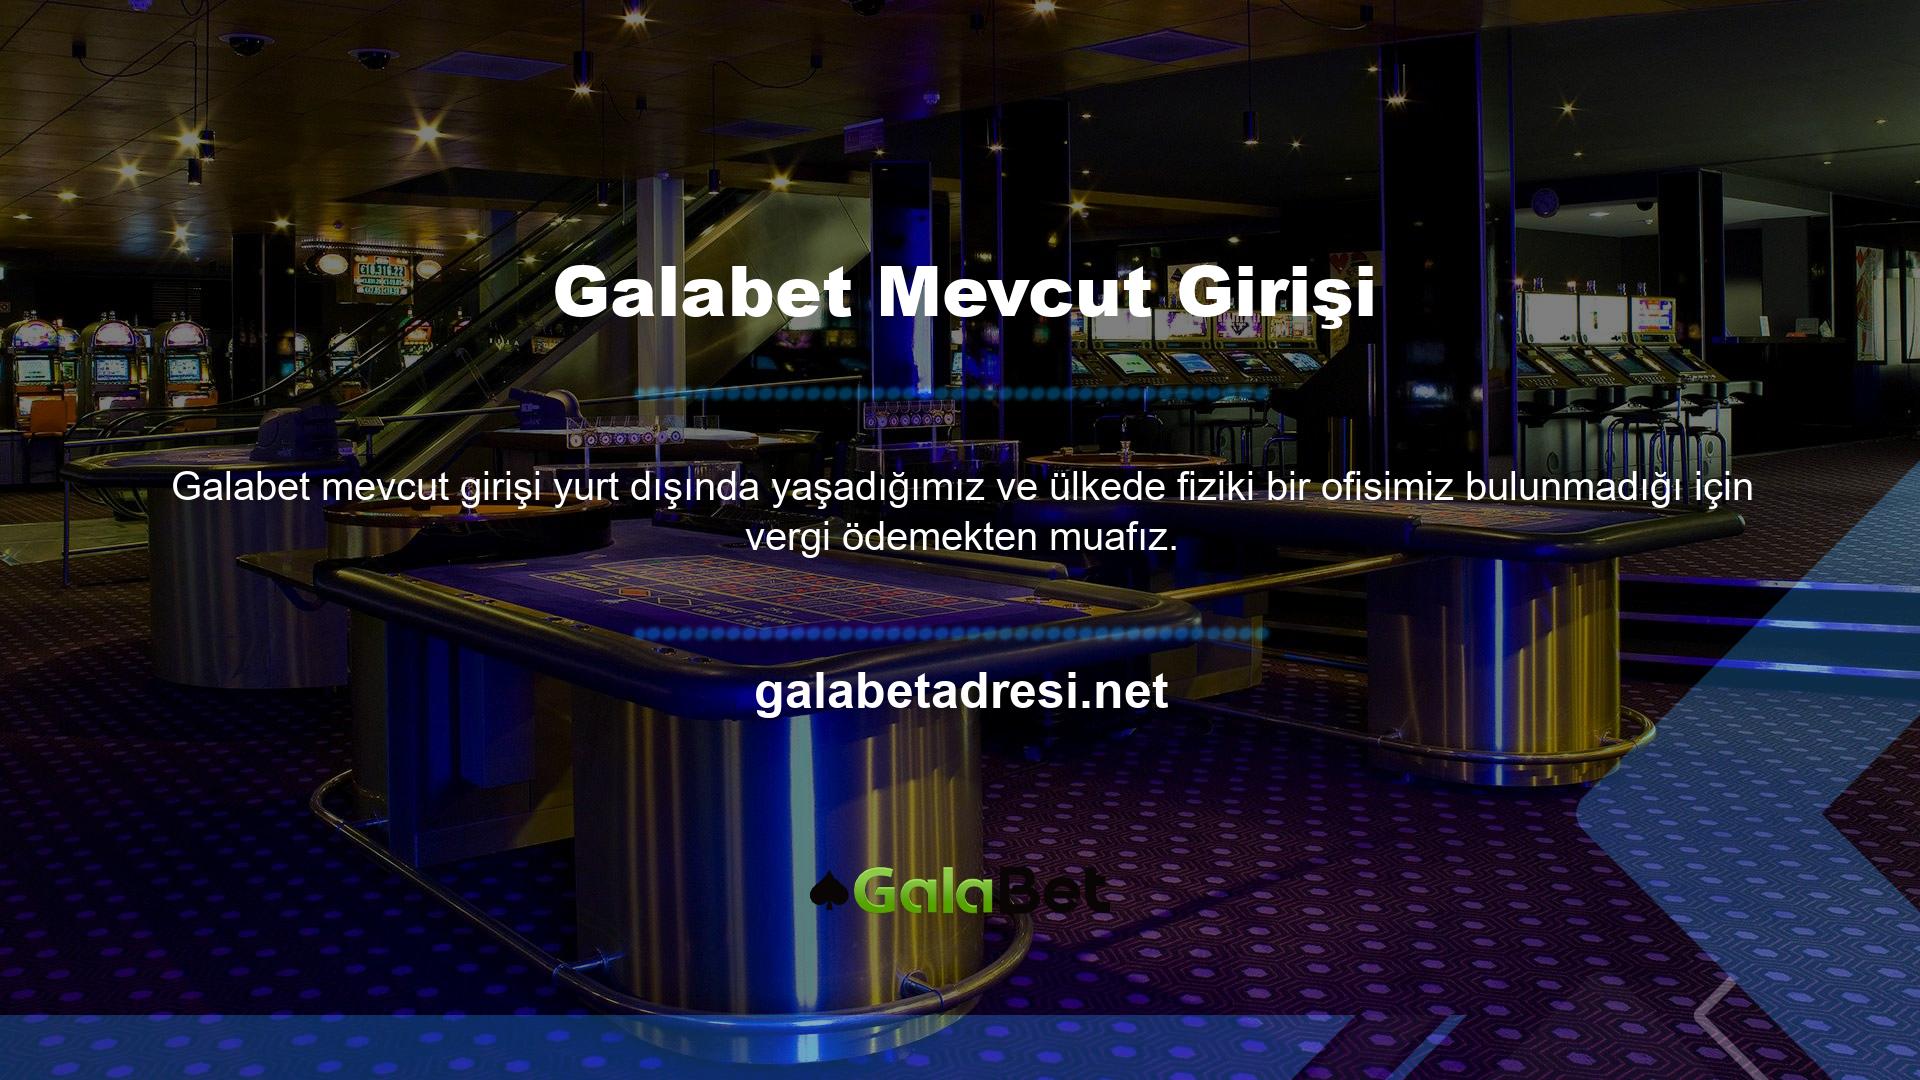 Galabet Hükümeti, Galabet diğer ülkelerde resmi hizmetler sunma yetkisi verdi